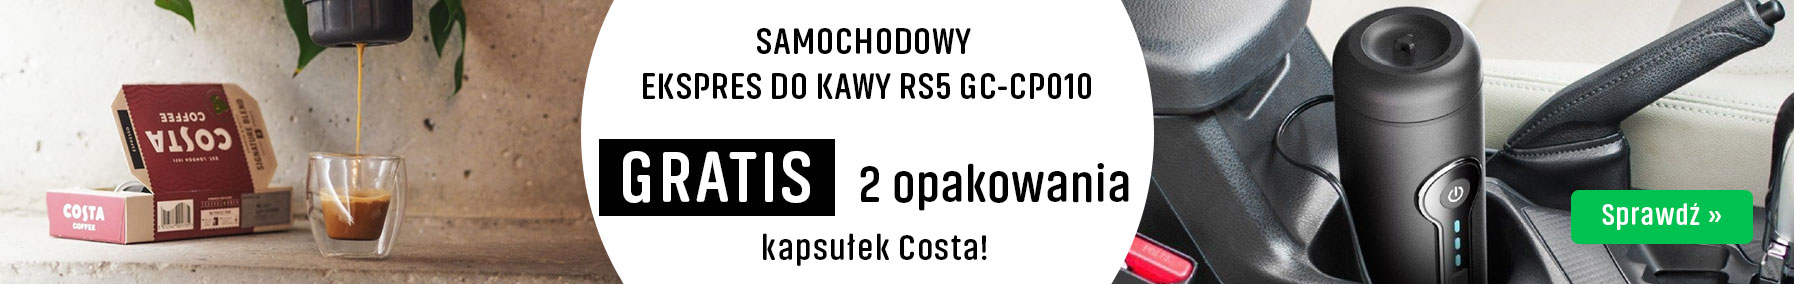 SAMOCHODOWY EKSPRES DO KAWY RS5 GC-CP010